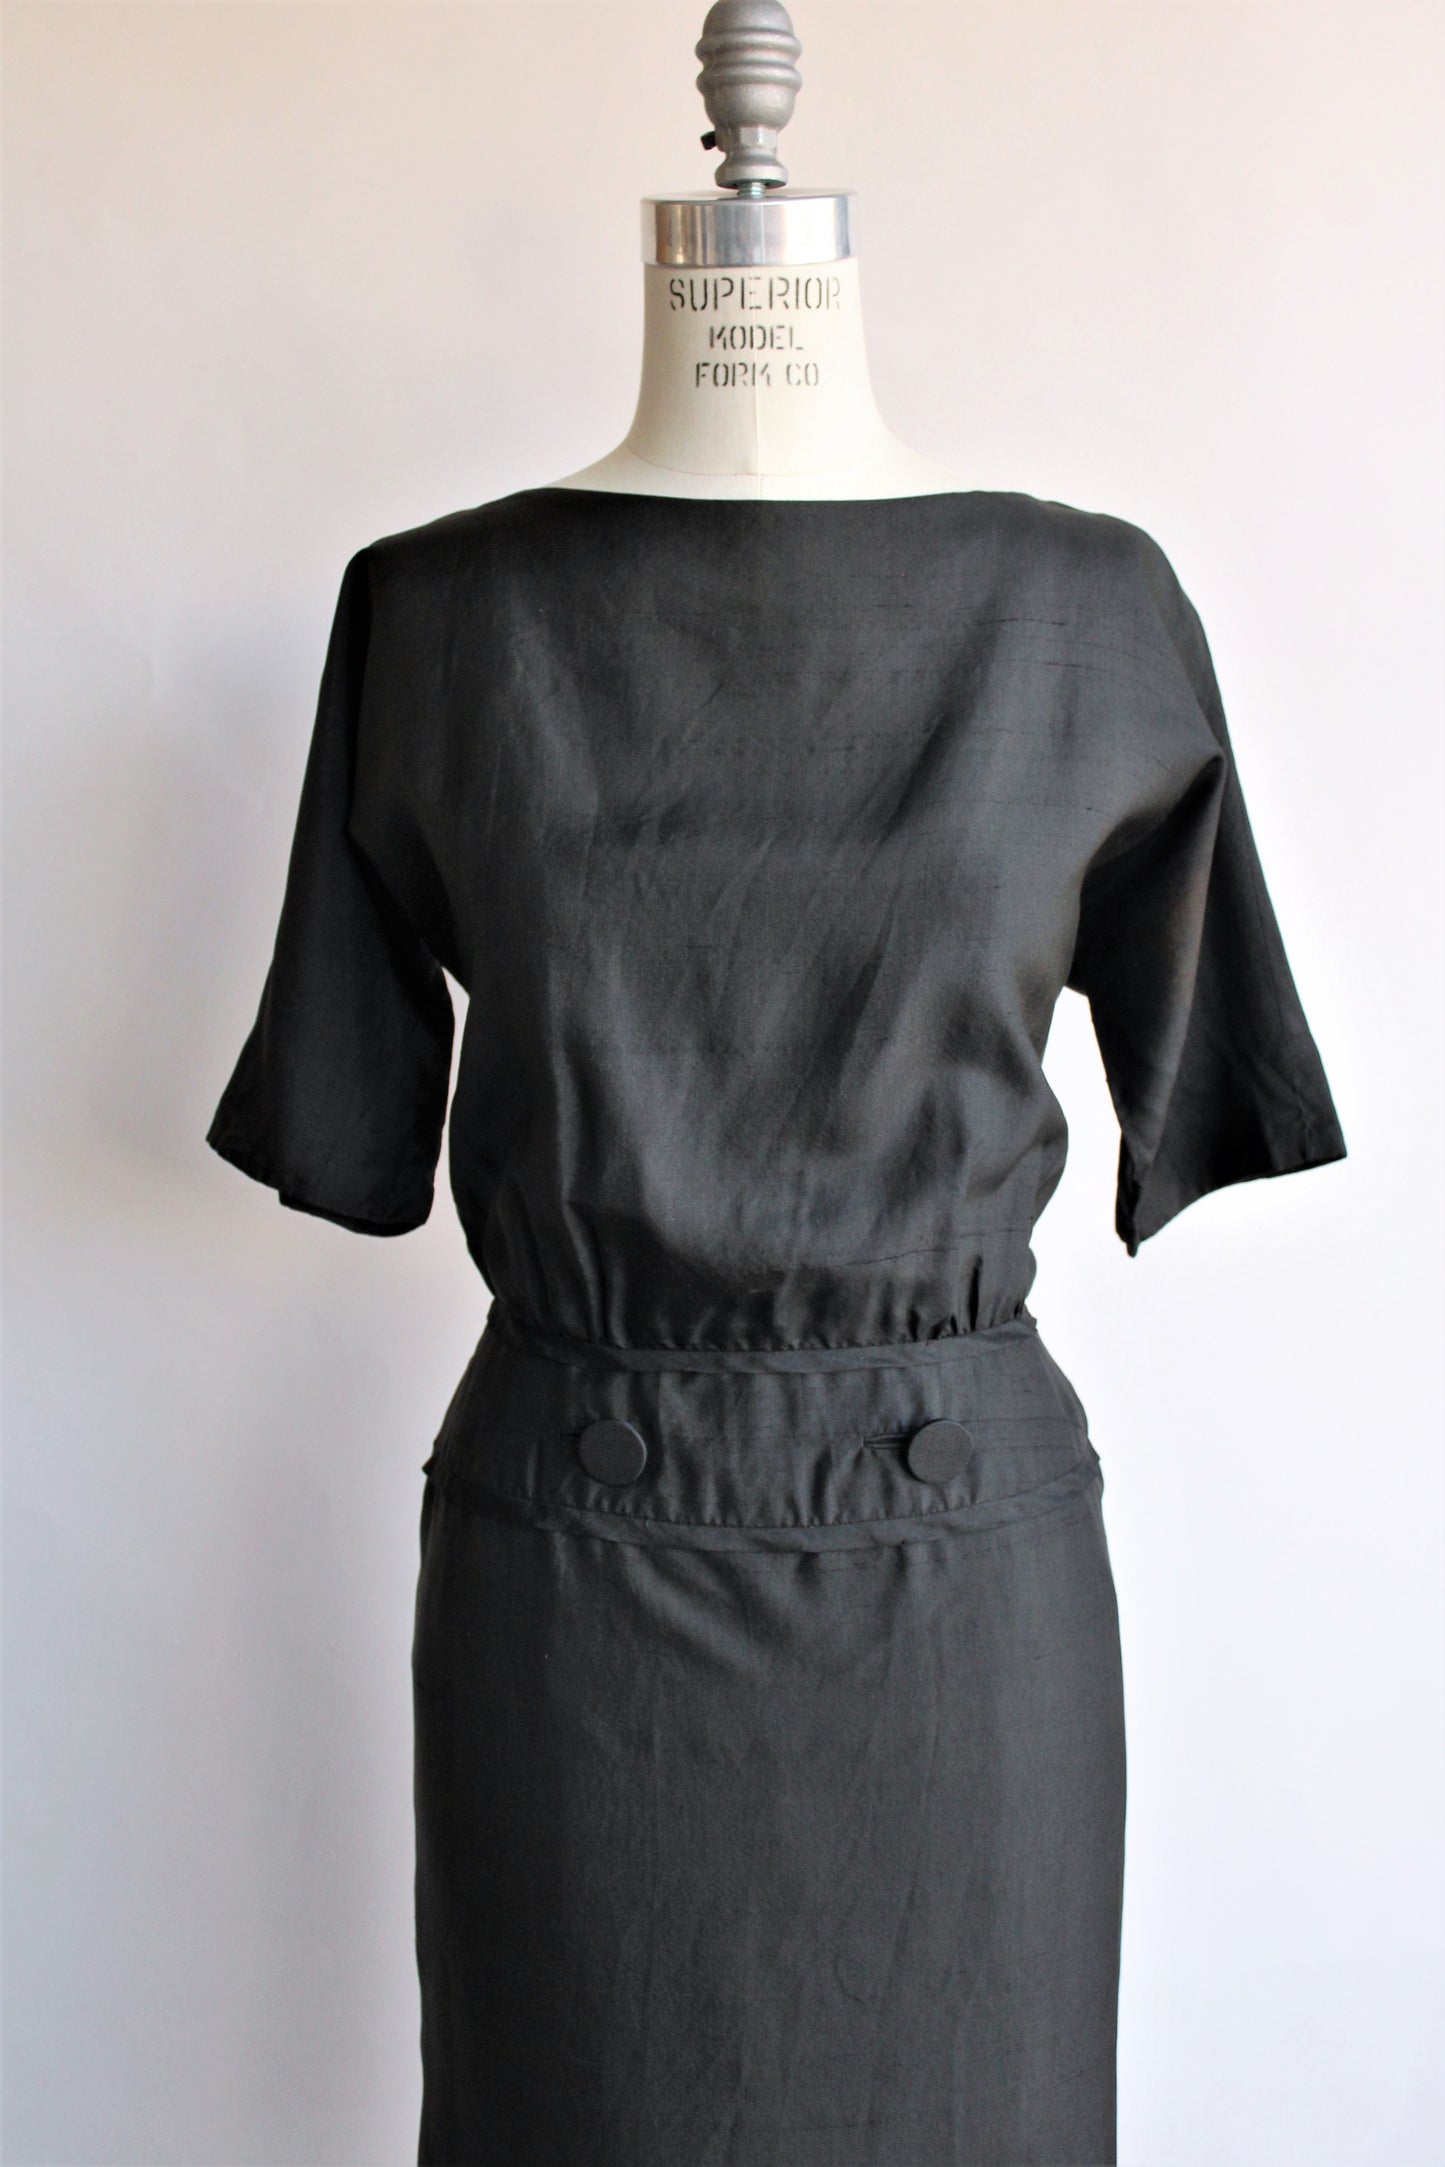 Vintage 1950s 1960s Black Silk Dress by Carl Naftal